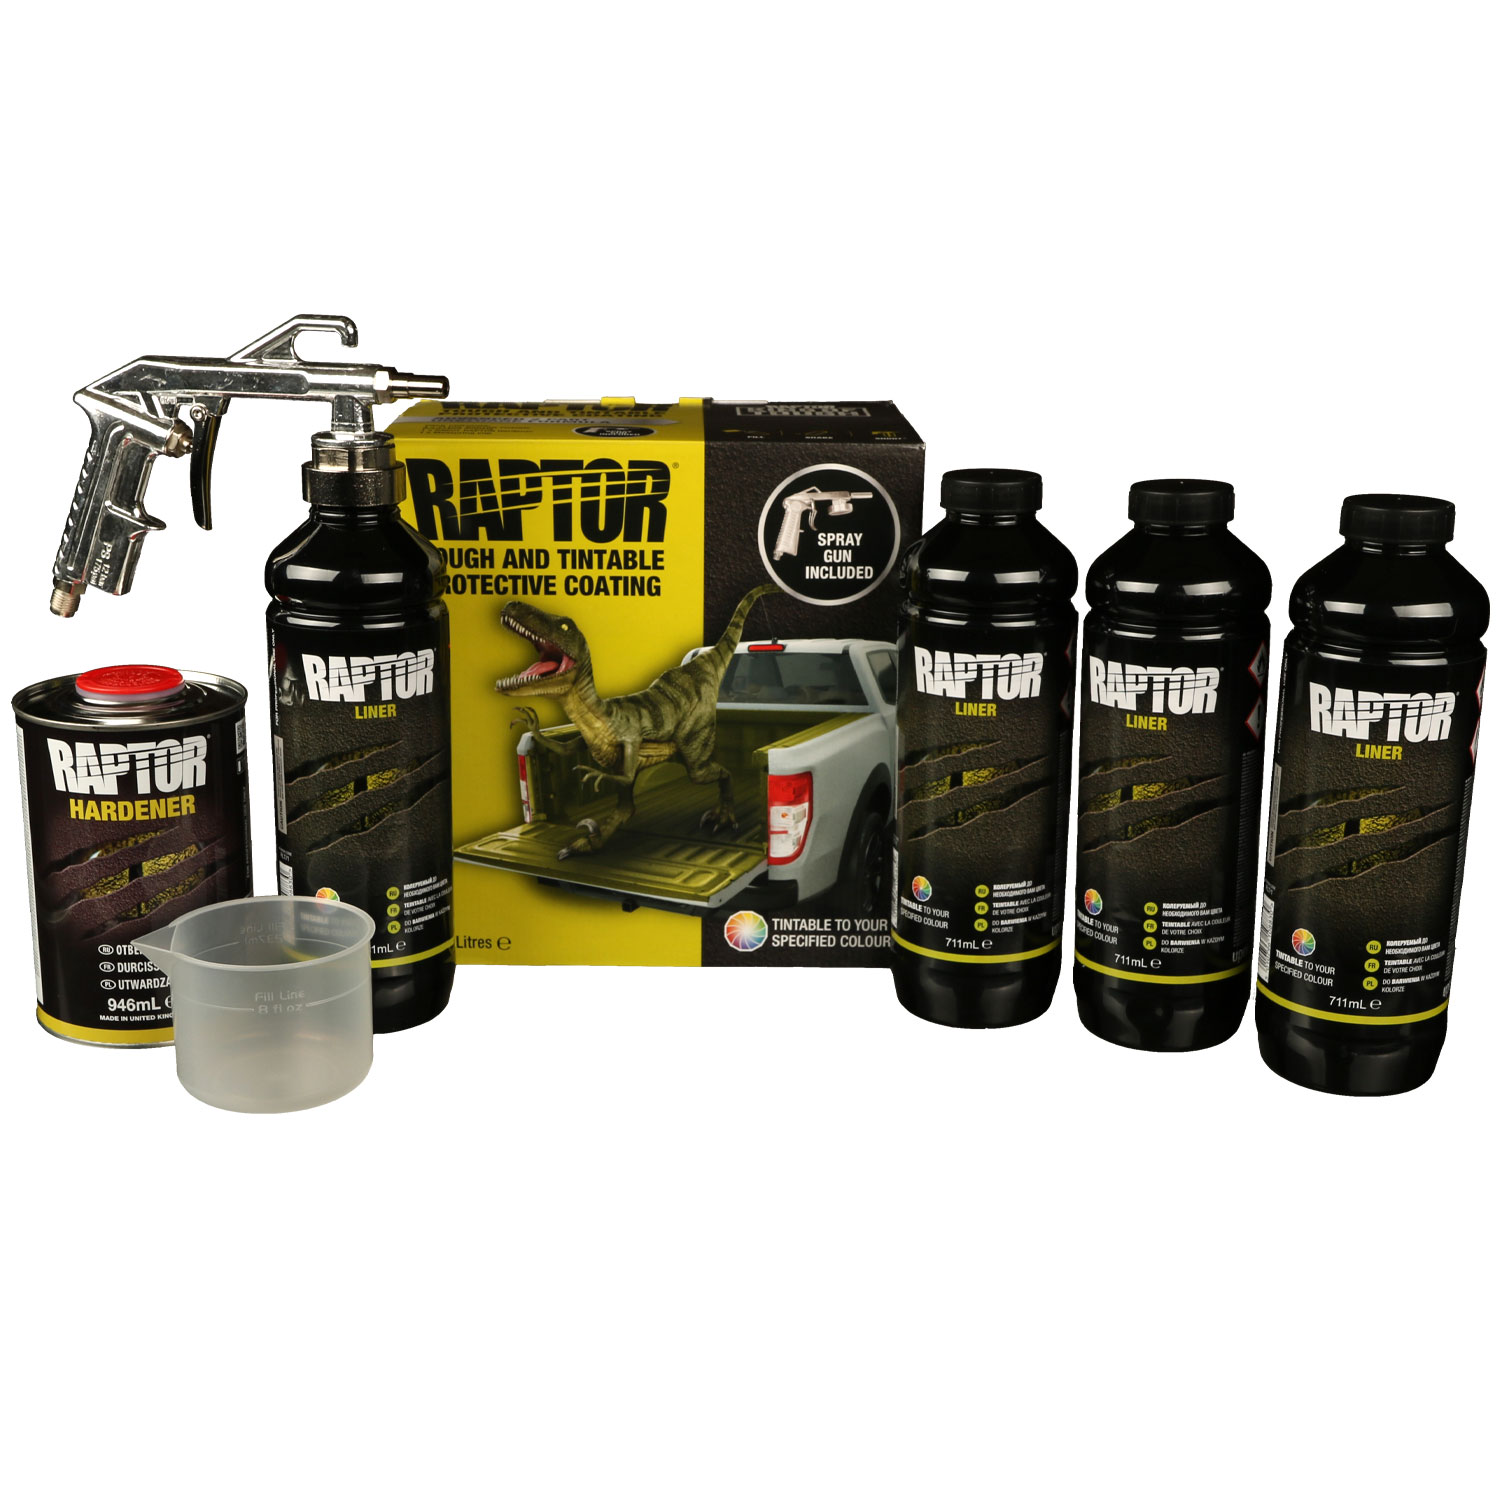 AKTION U-POL Raptor Liner Kit + Pistole Gun/1